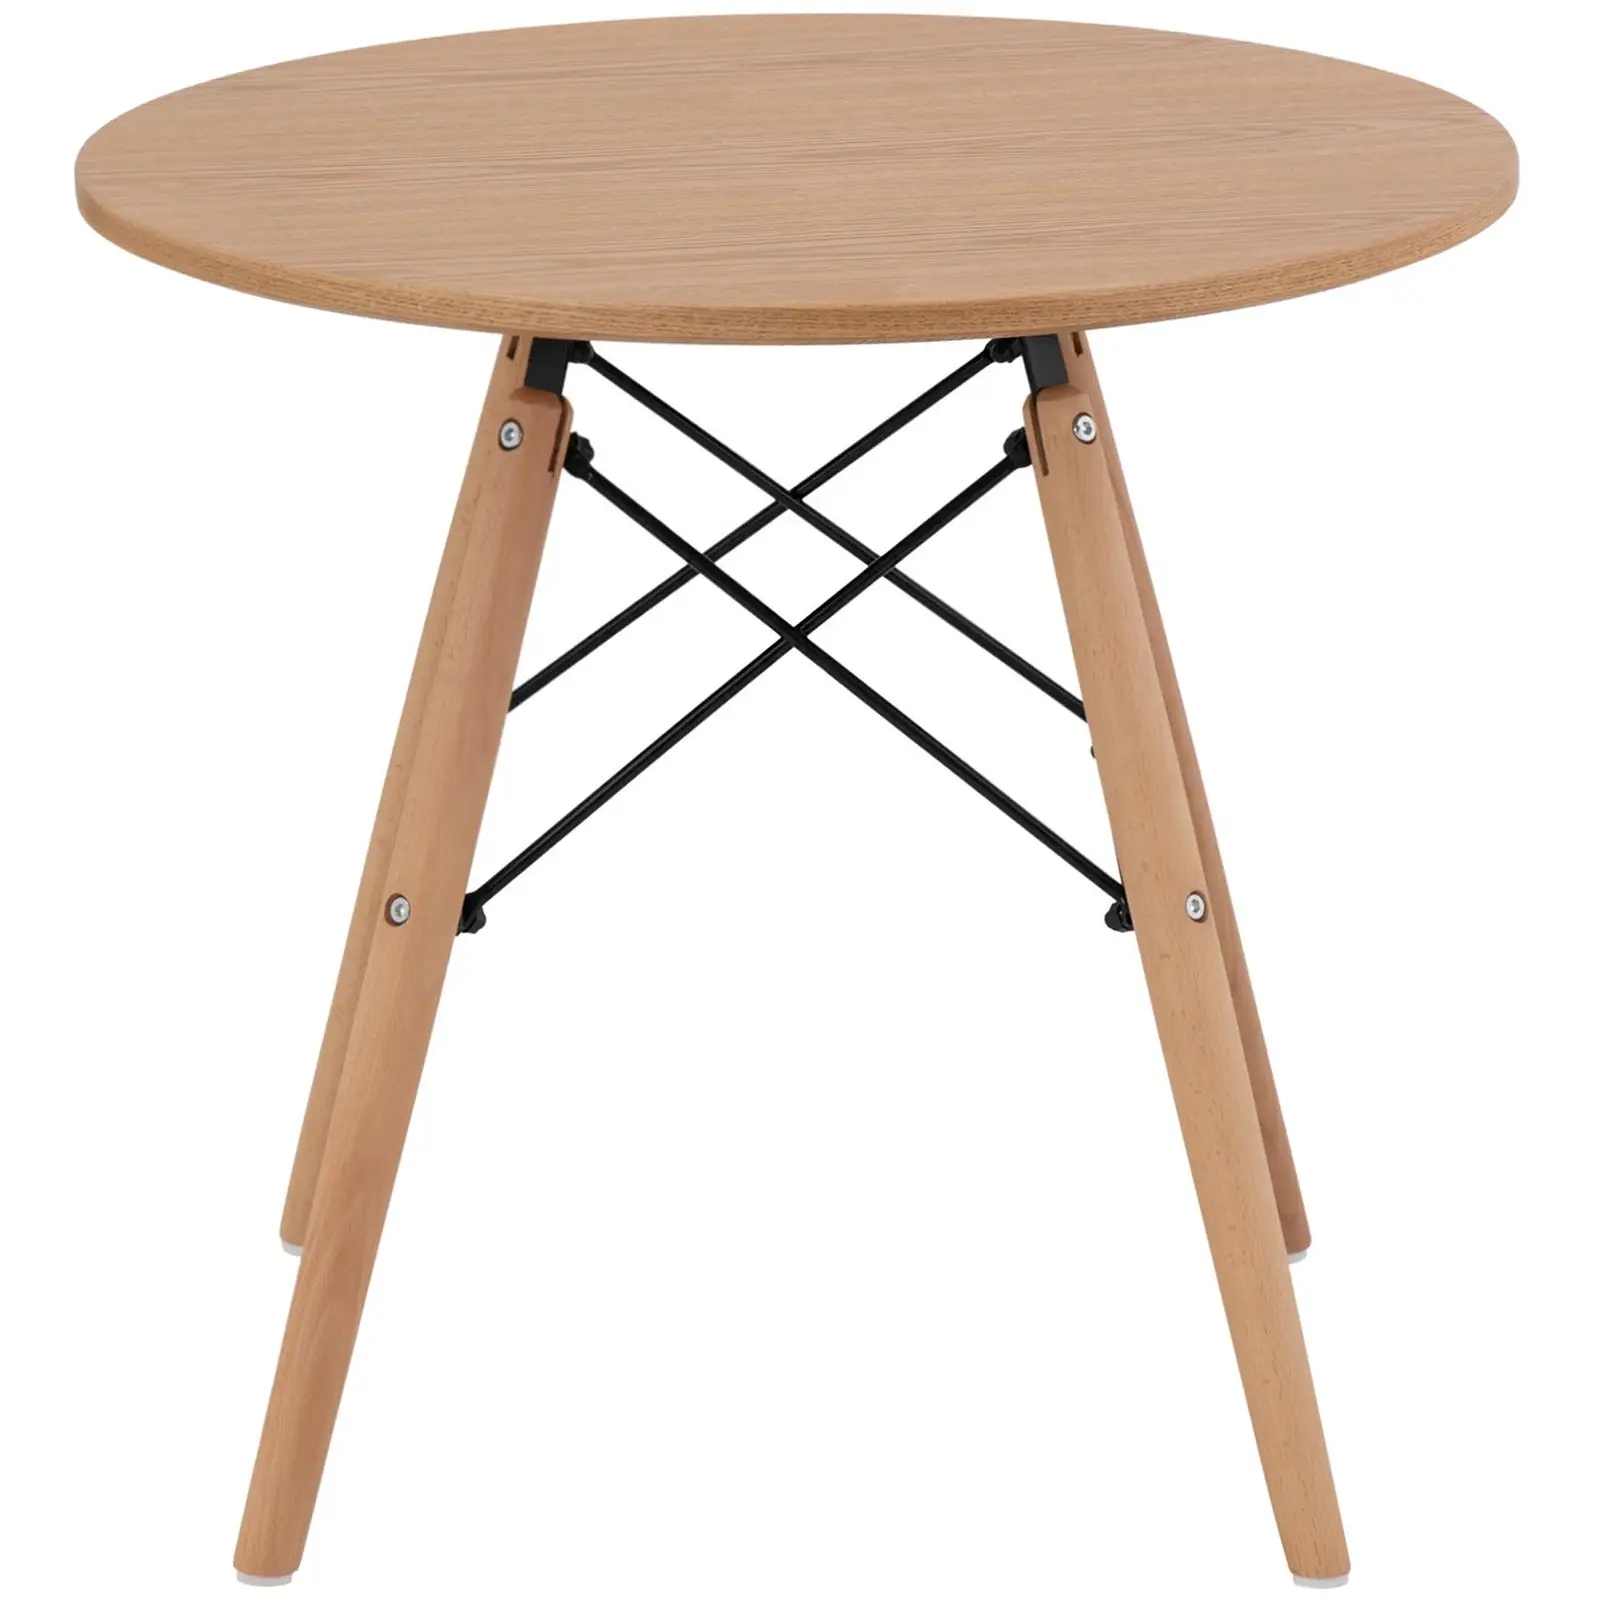 Pöytä - pyöreä - Ø60 cm